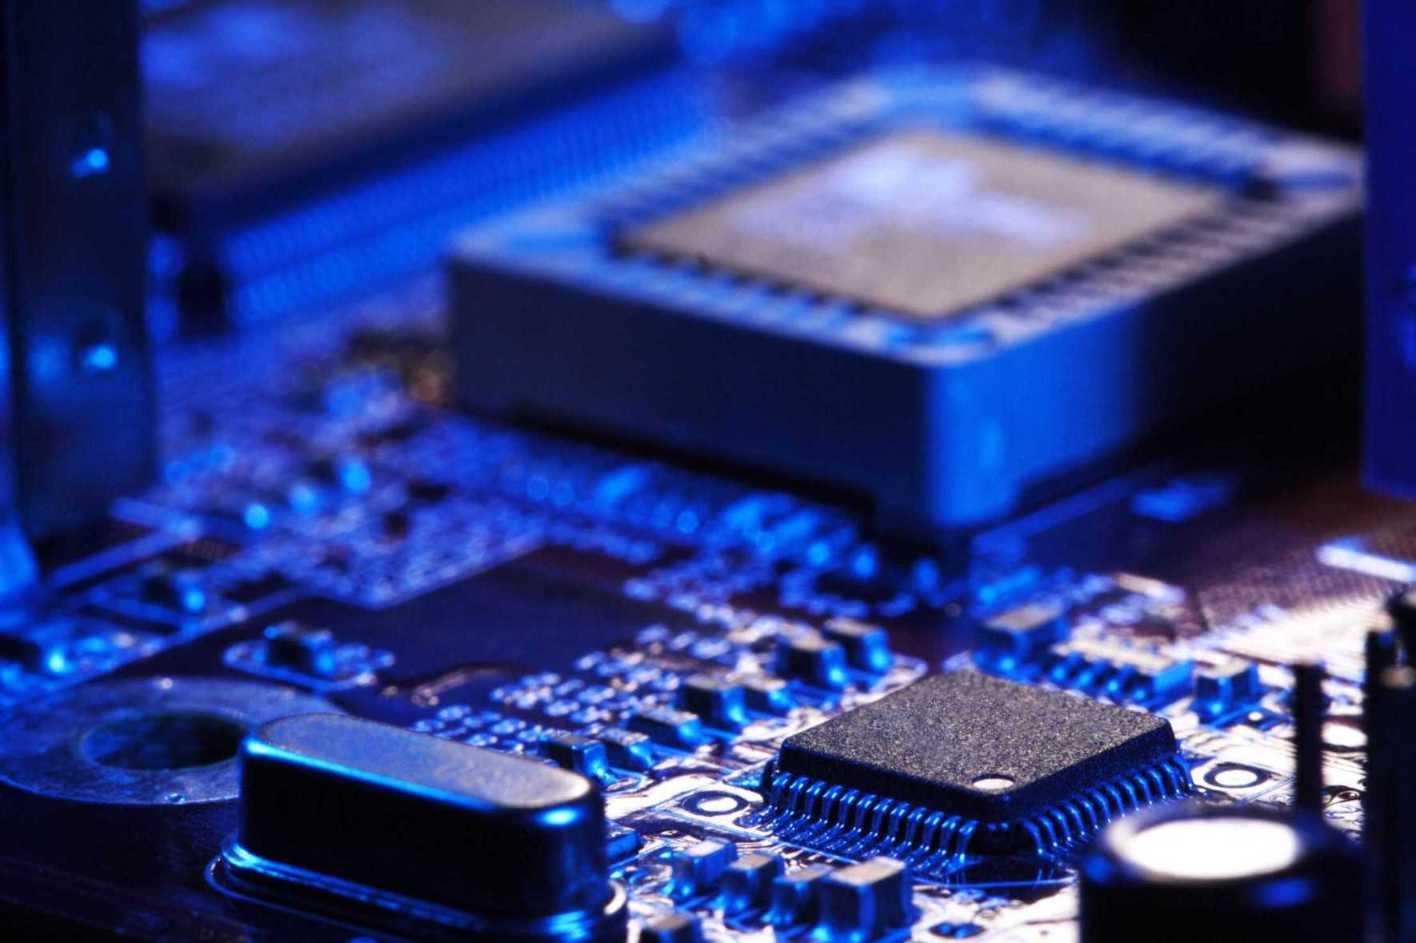 复旦微电20亿元定增申请获上交所受理 强化FPGA/存储器等产品布局